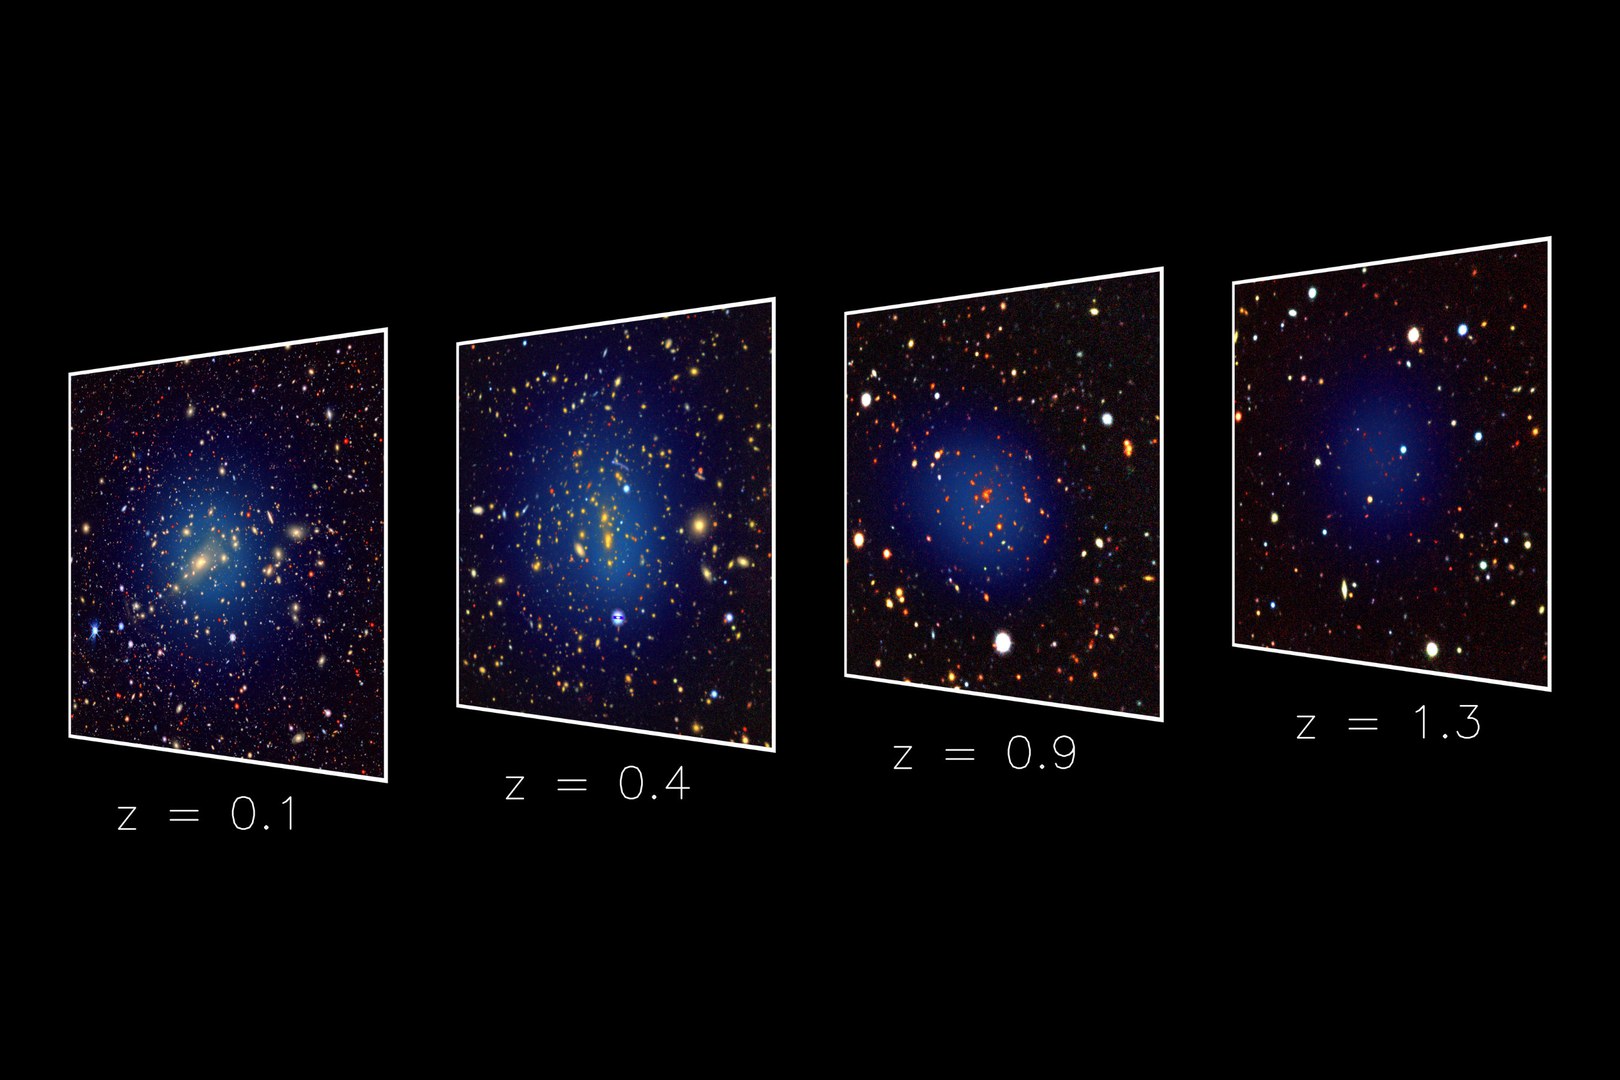 Die optischen Bilder zeigen Galaxien in Richtung von vier Galaxienhaufen in unterschiedlichen Entfernungen. Die Röntgenemission von heißem Gas in den Haufen ist in blau dargestellt.